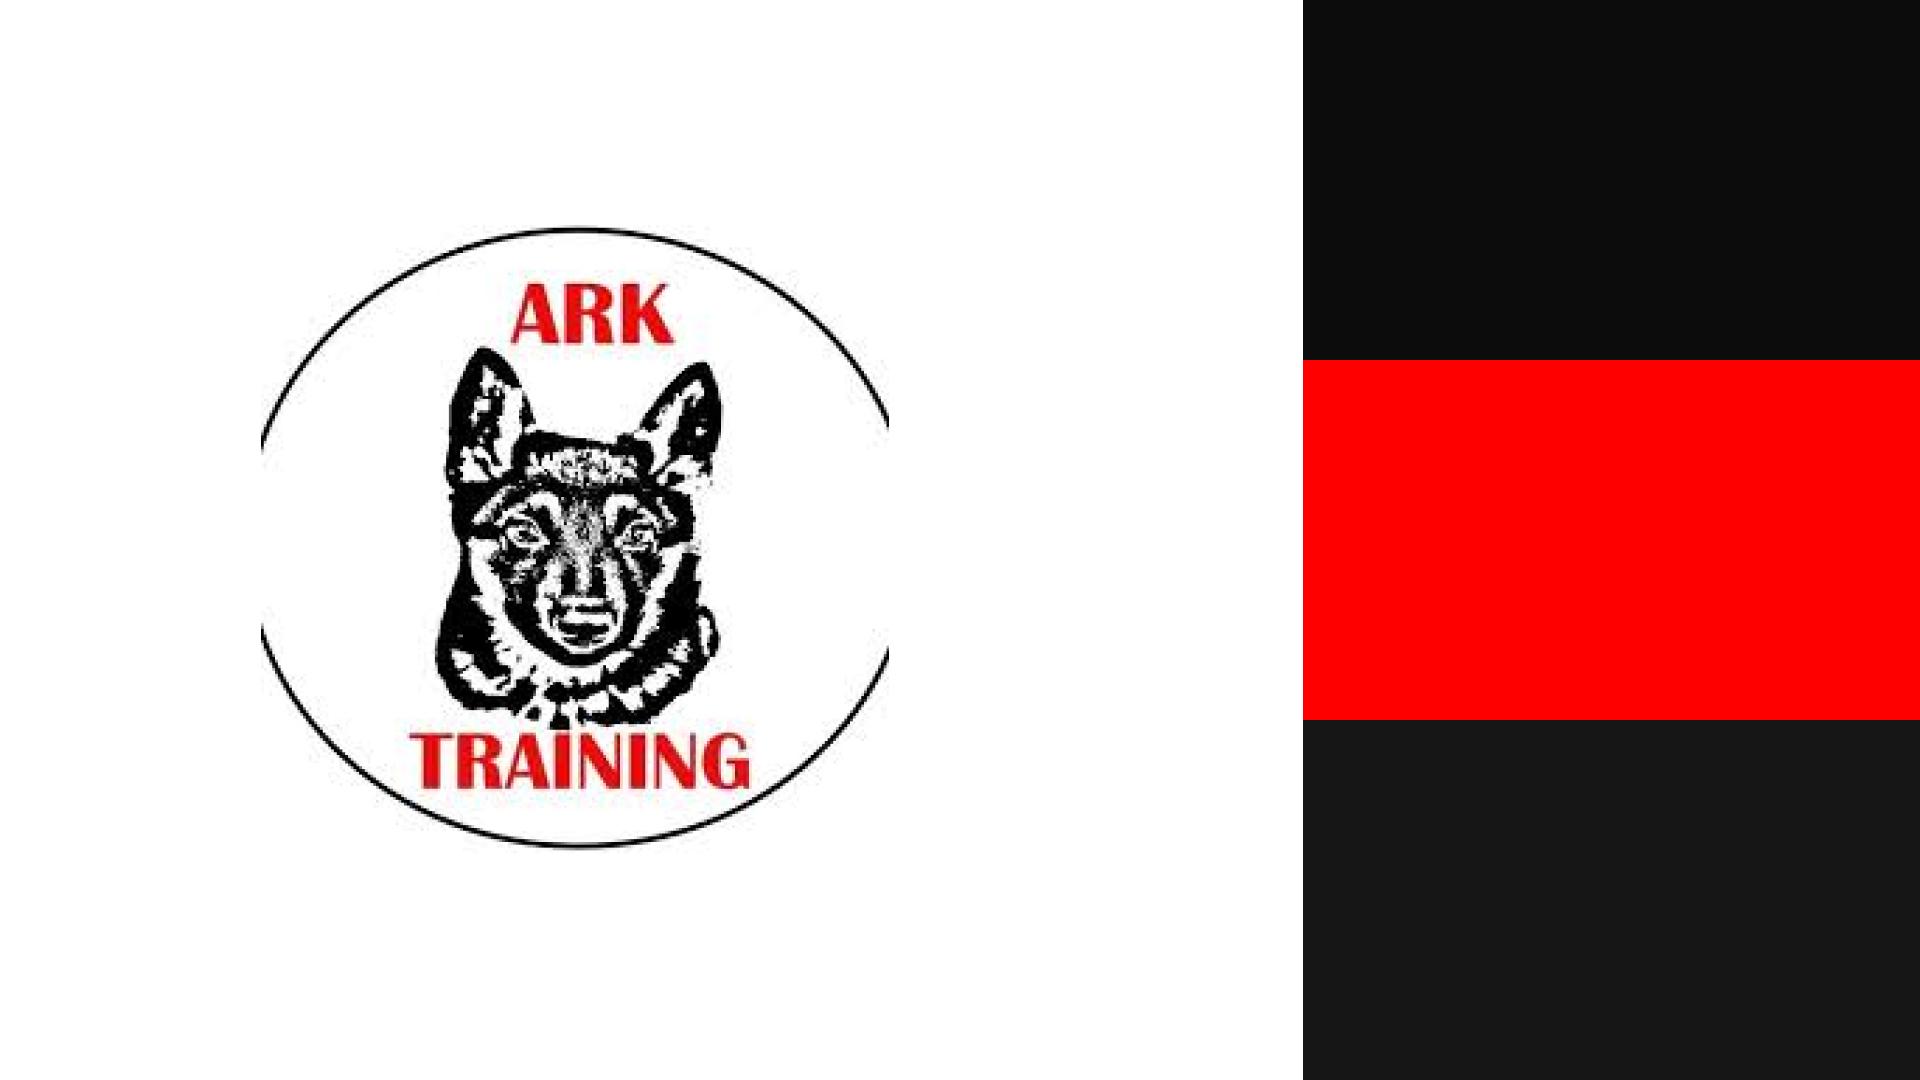 ARK Training Branding Old